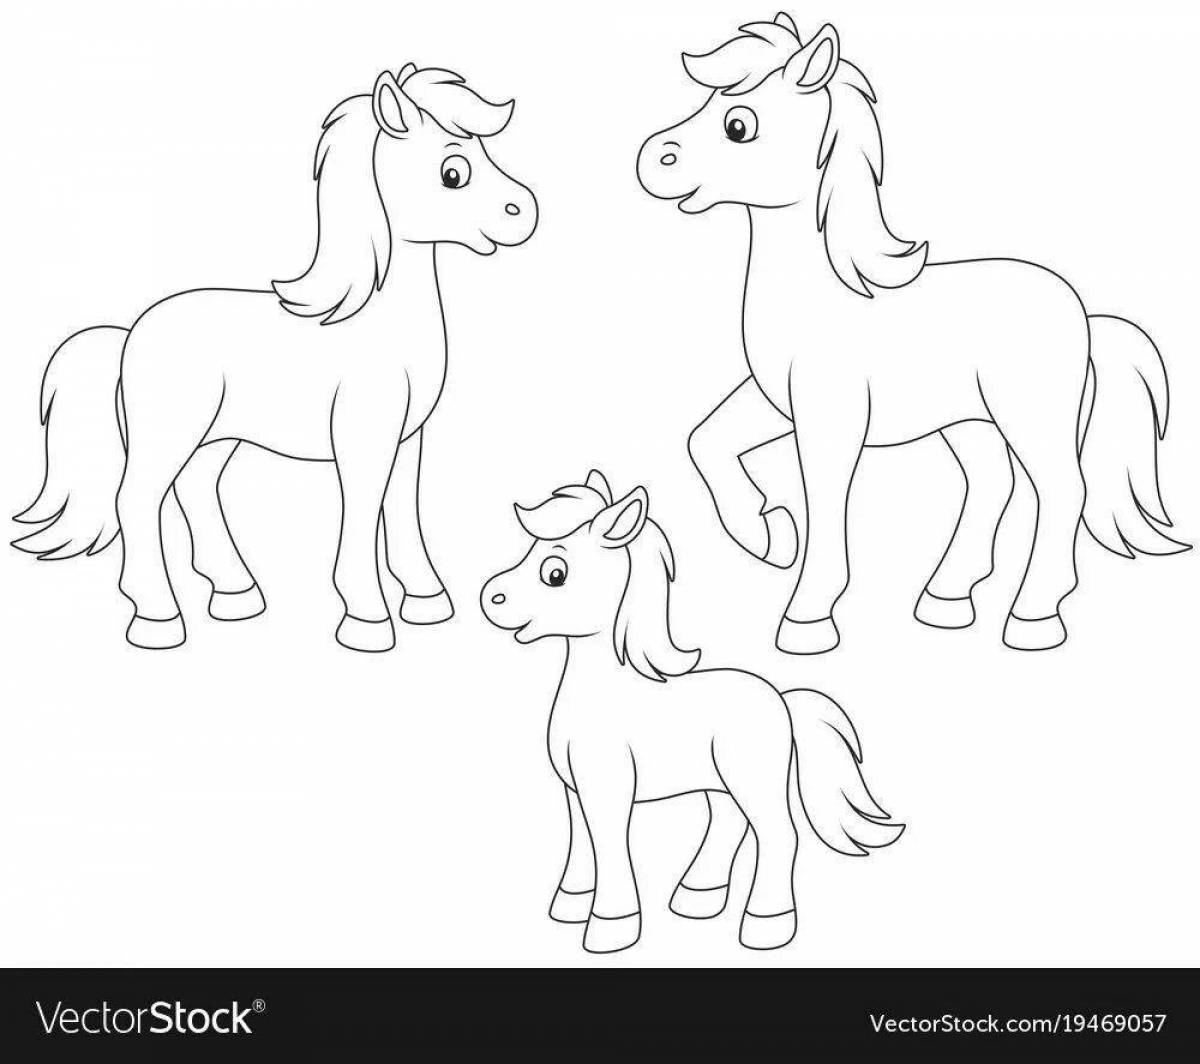 Великолепная раскраска лошадиная семья